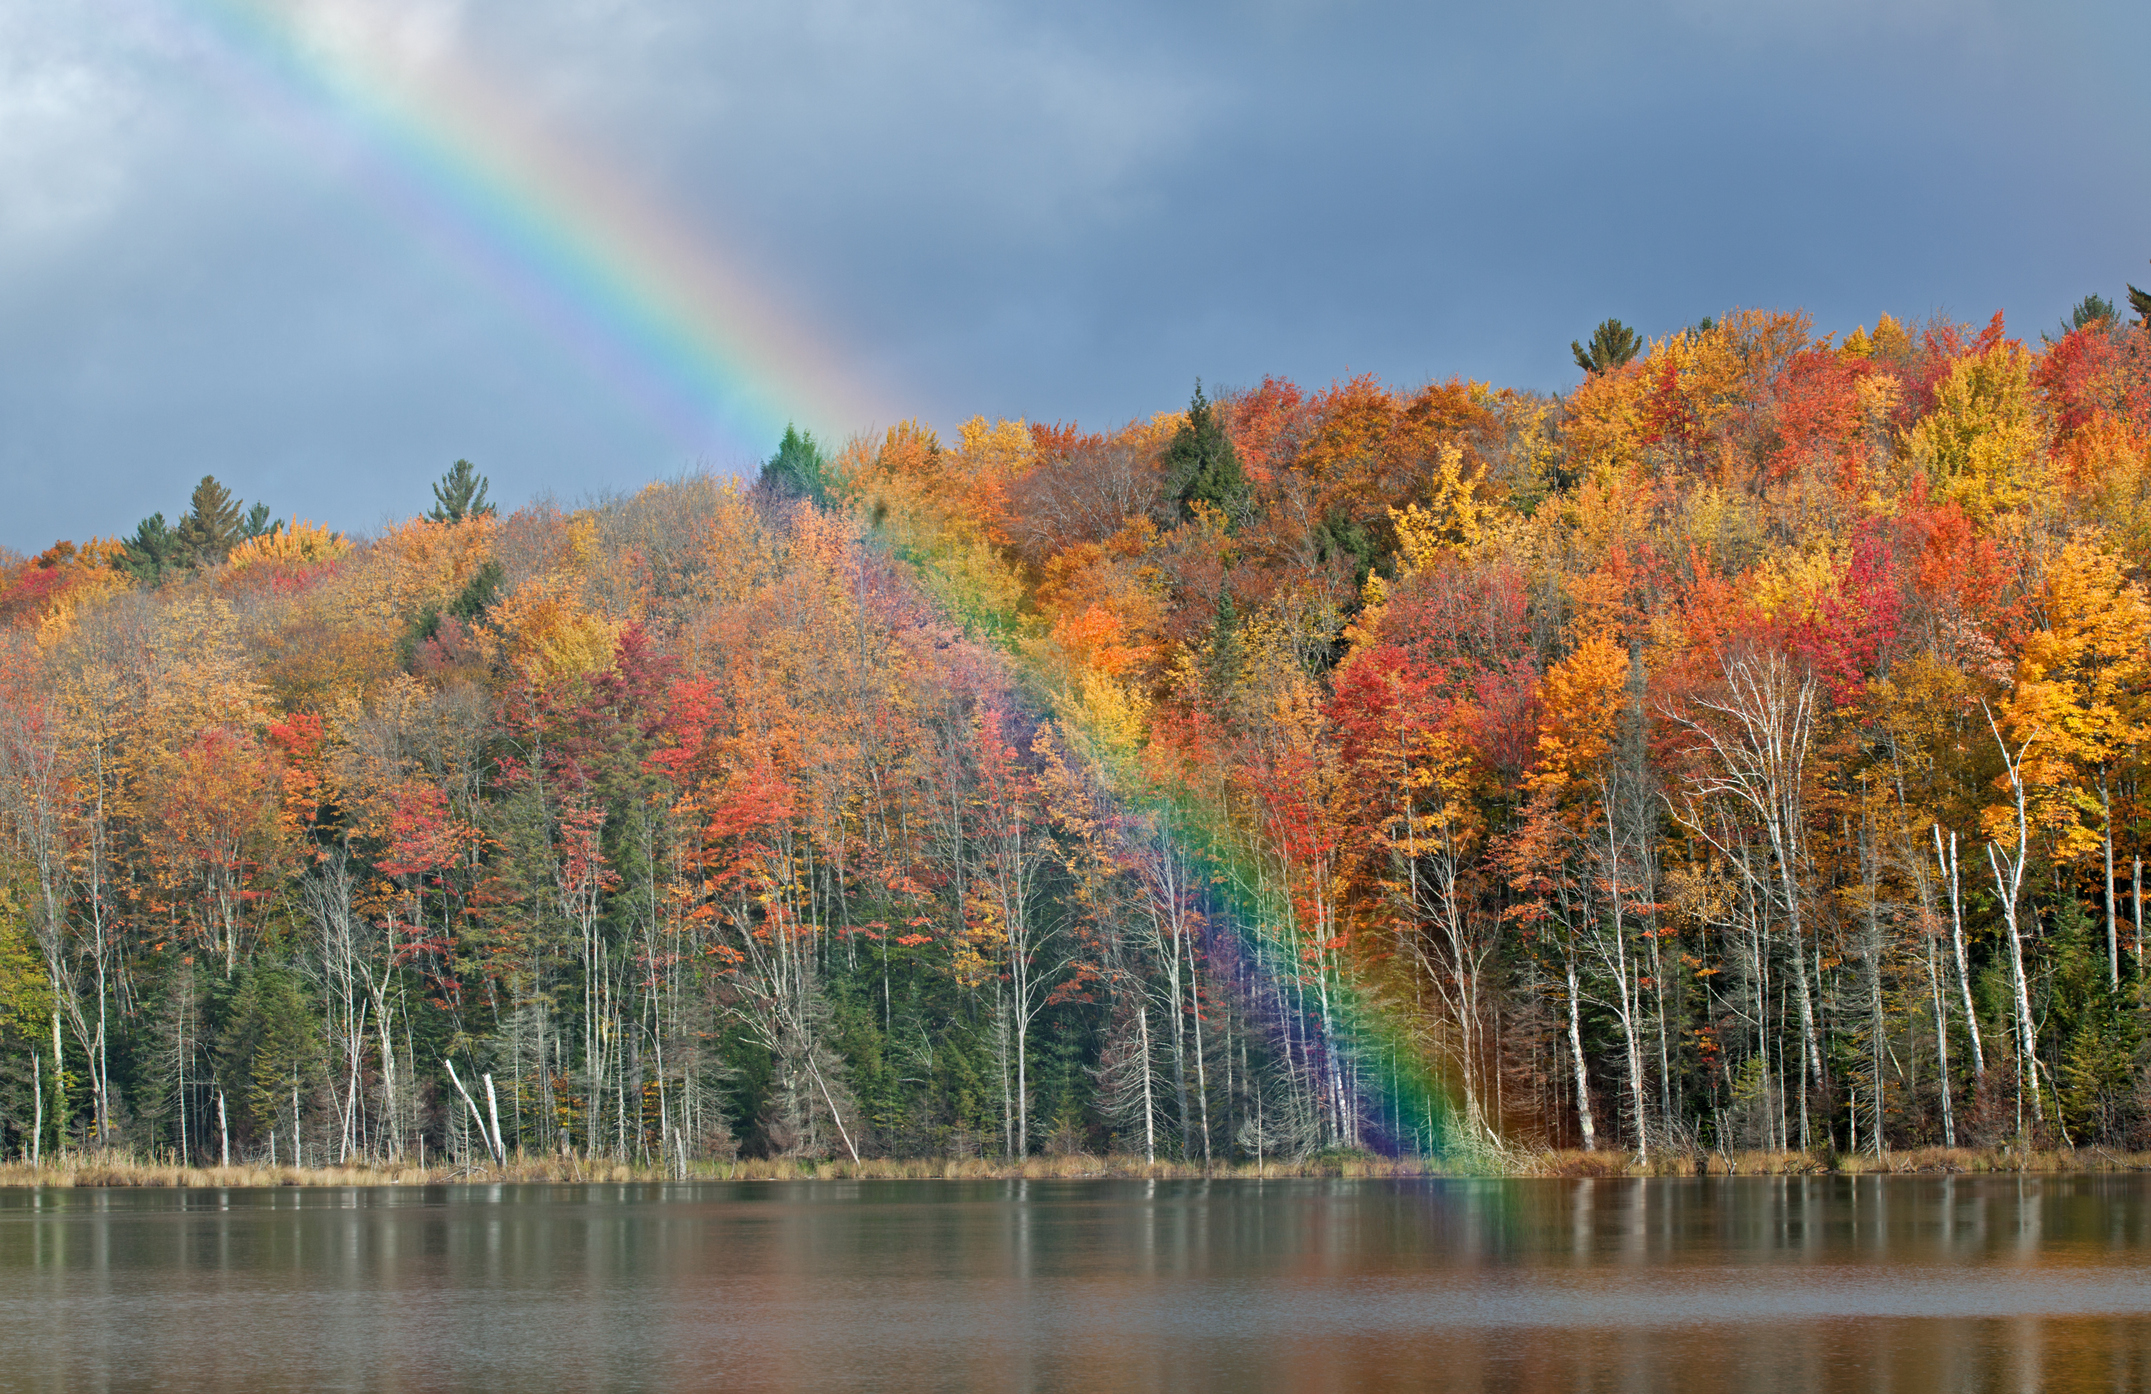 Rainbow at autumn